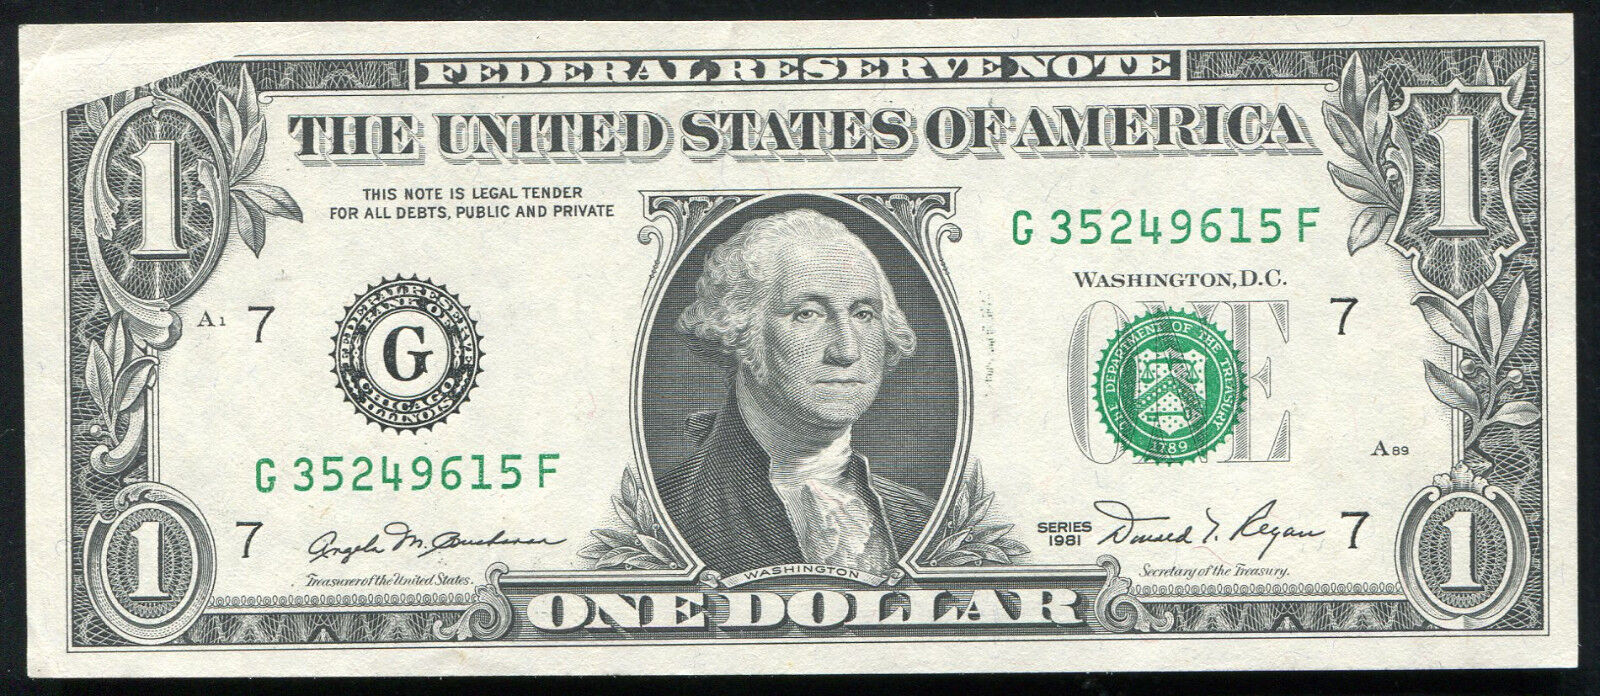 1981 $1 ONE DOLLAR FRN NOTE FEDERAL ERROR